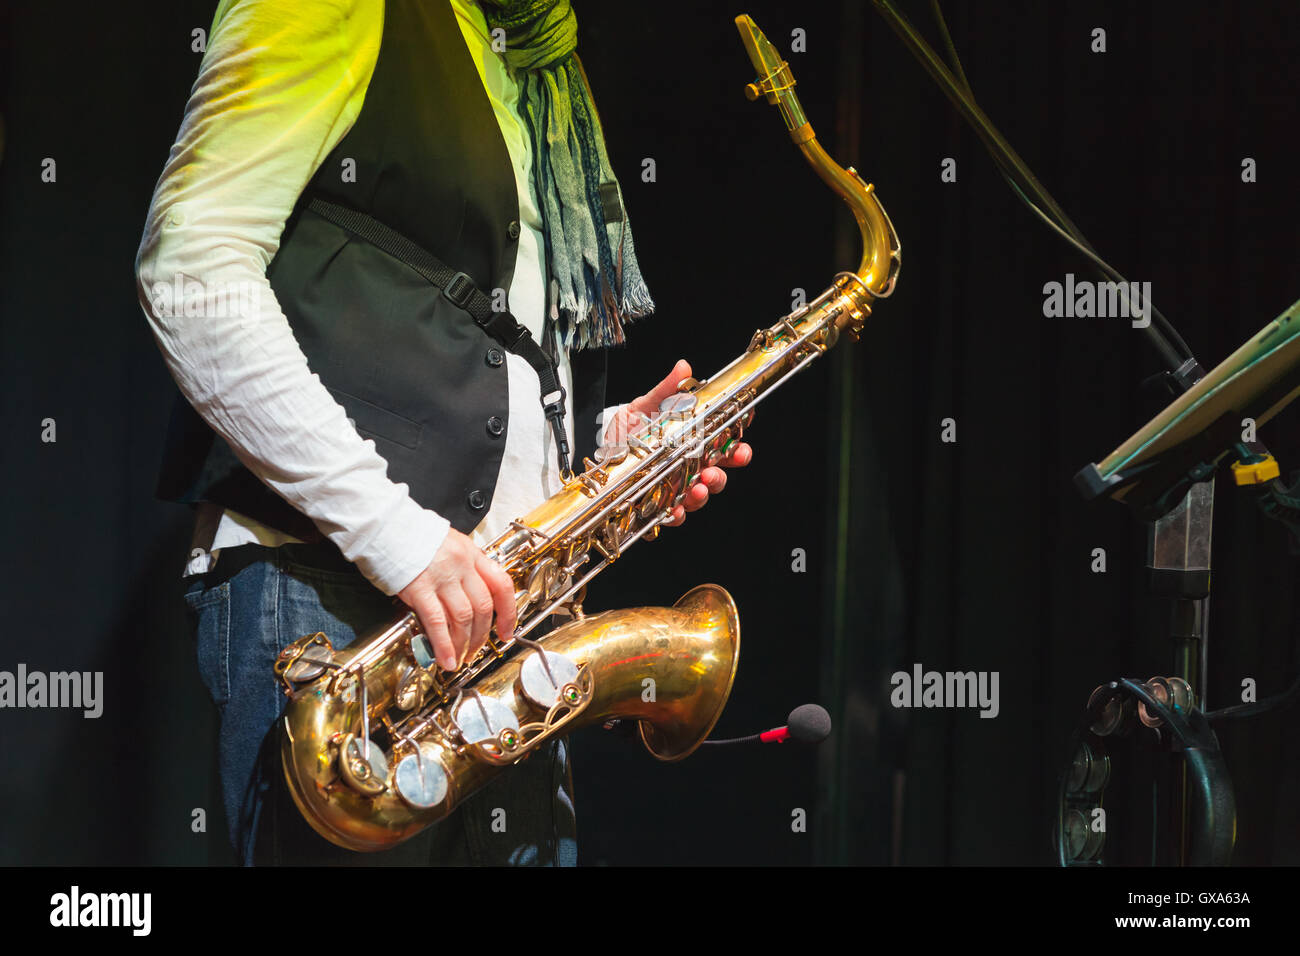 Música en vivo, saxofonista en un escenario con iluminación de colores Foto de stock